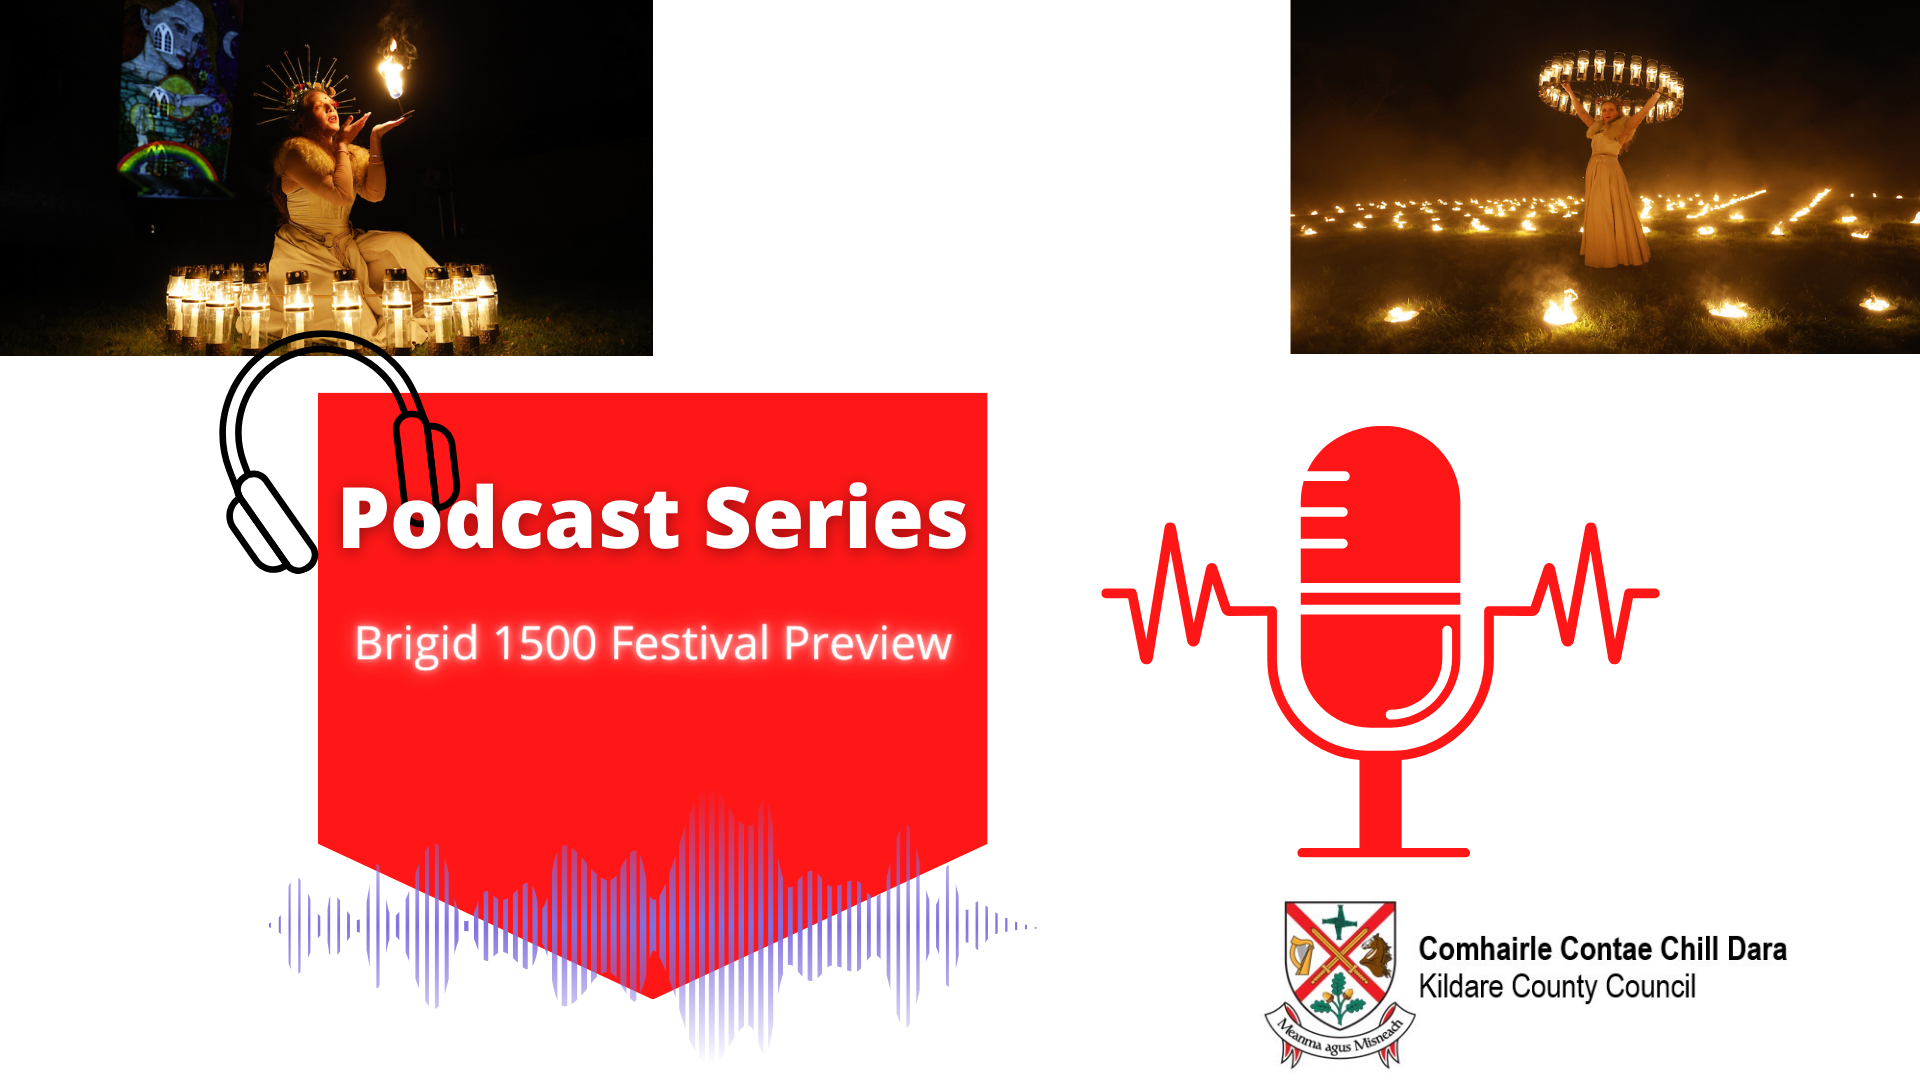 Kildare Co. Co. Podcast - Brigid 1500 Festival